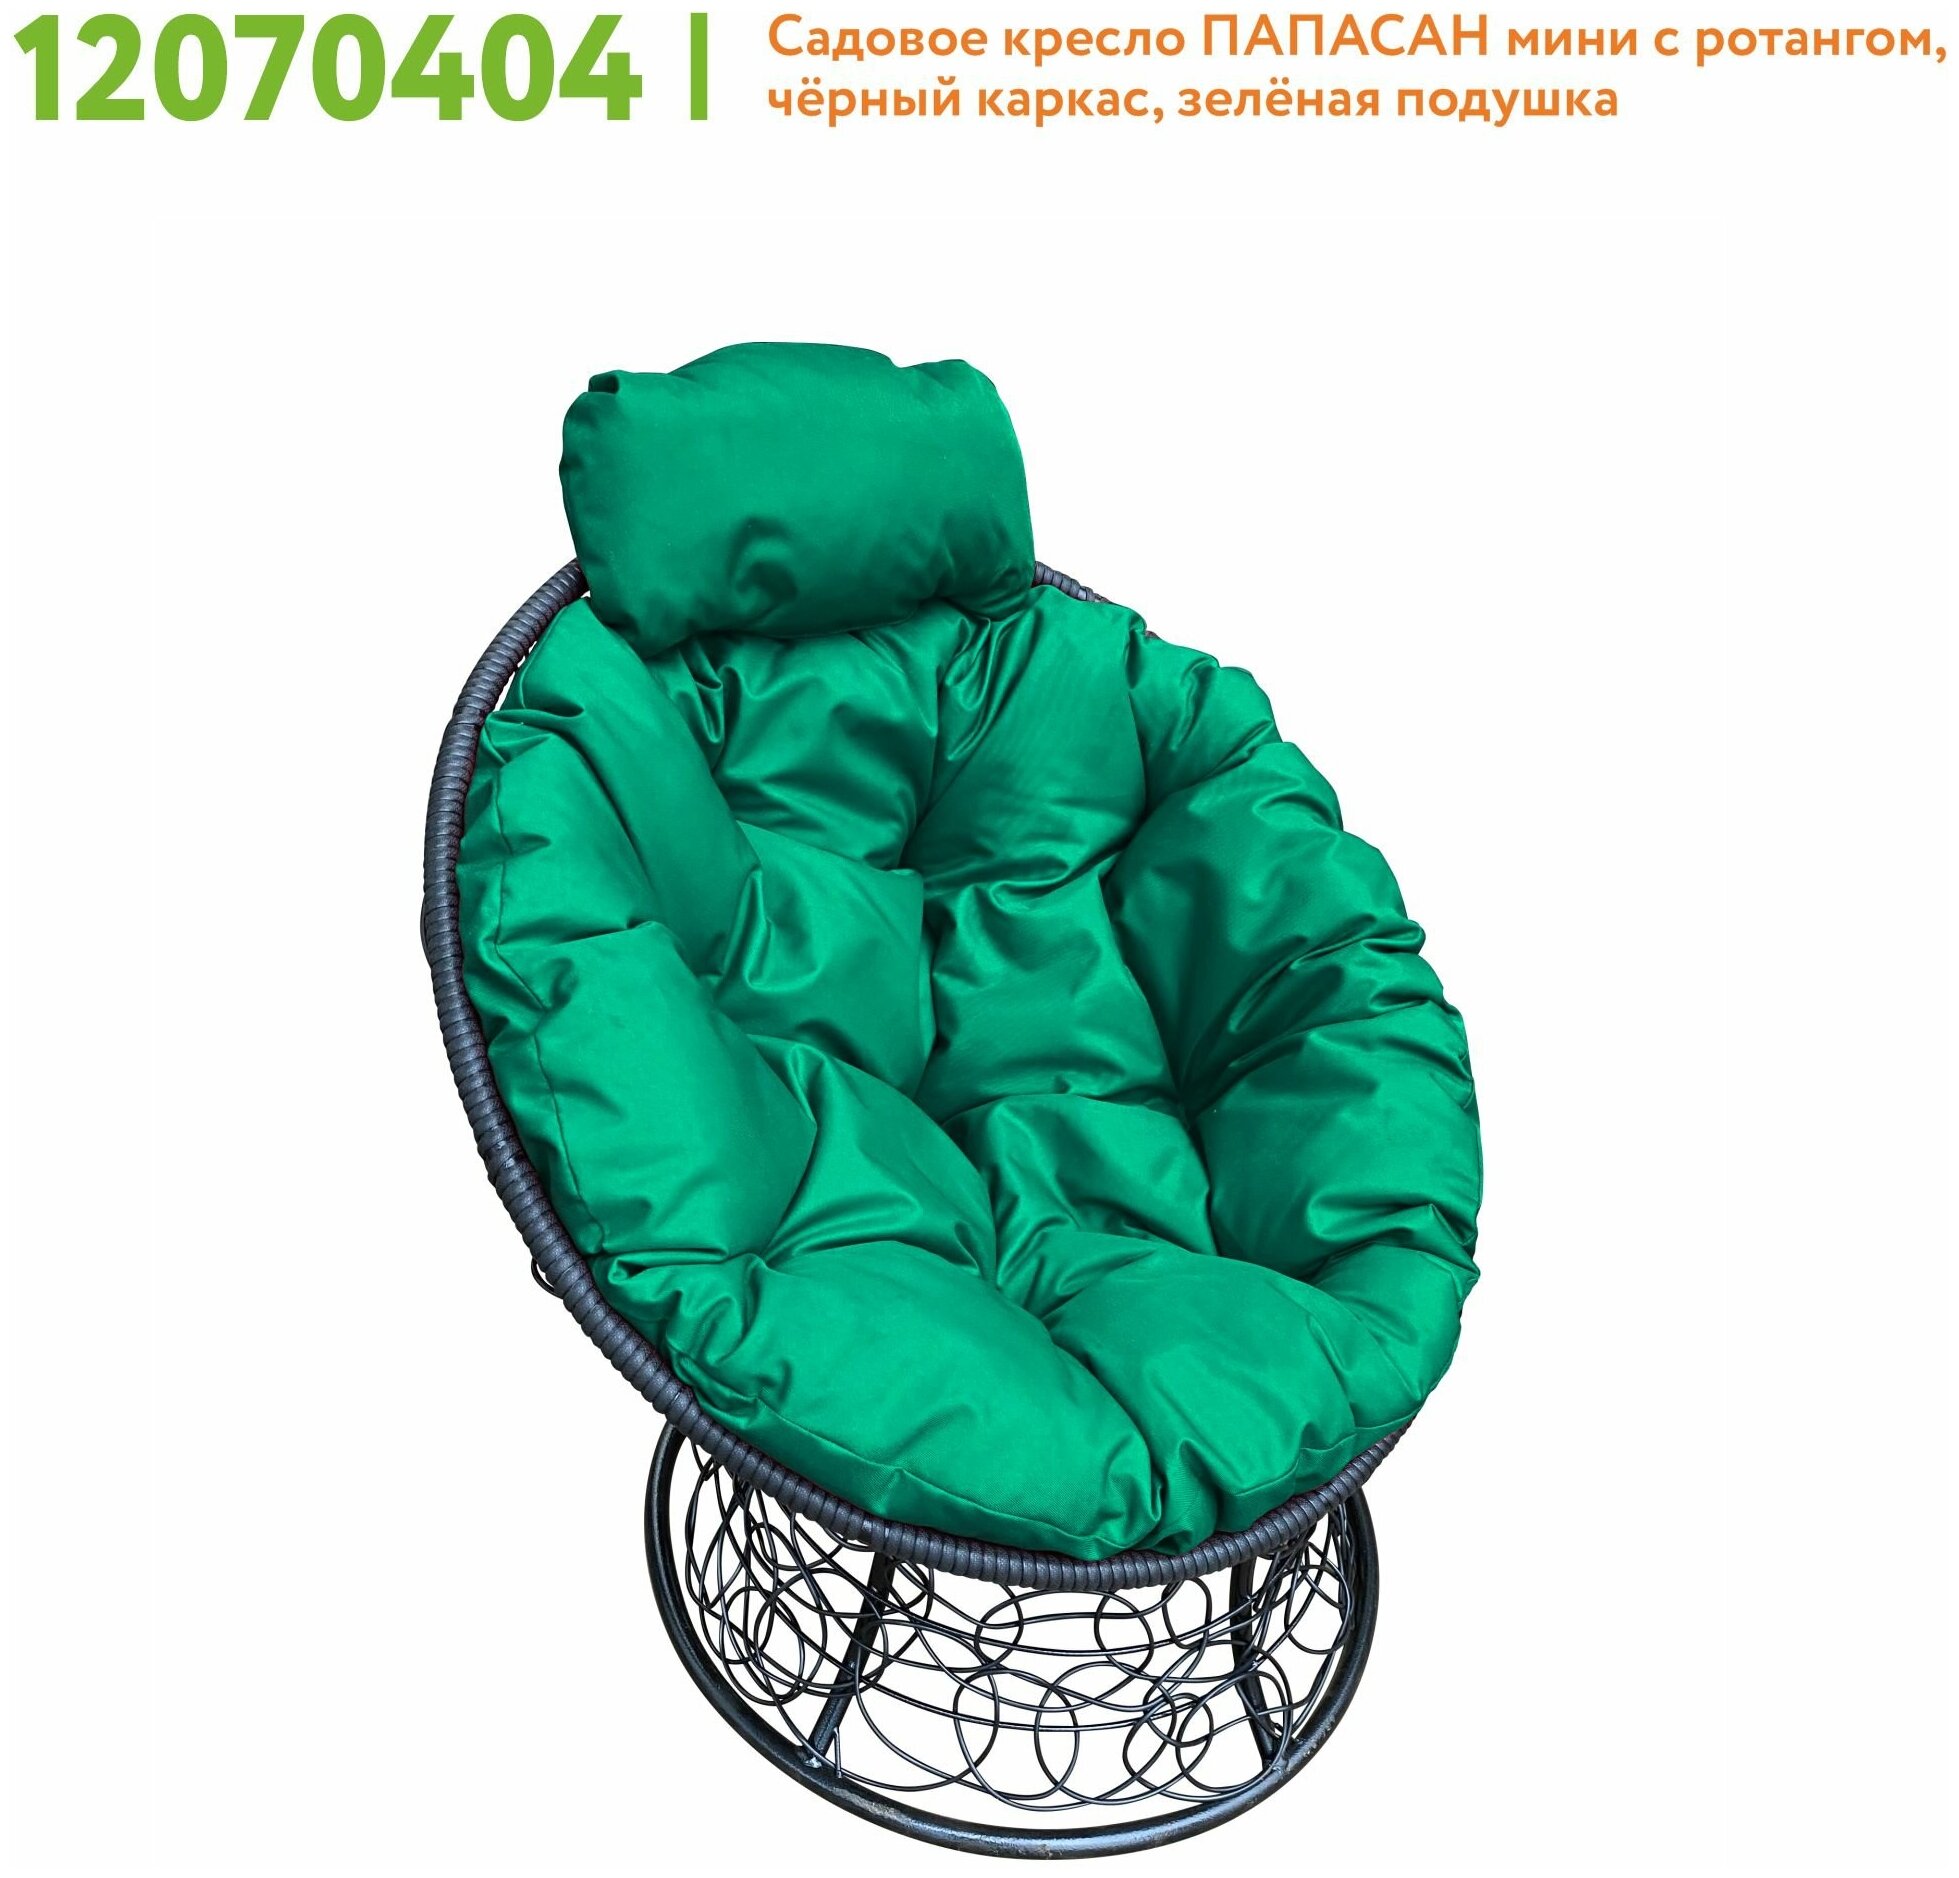 Кресло m-group папасан мини с ротангом чёрное, зелёная подушка - фотография № 4